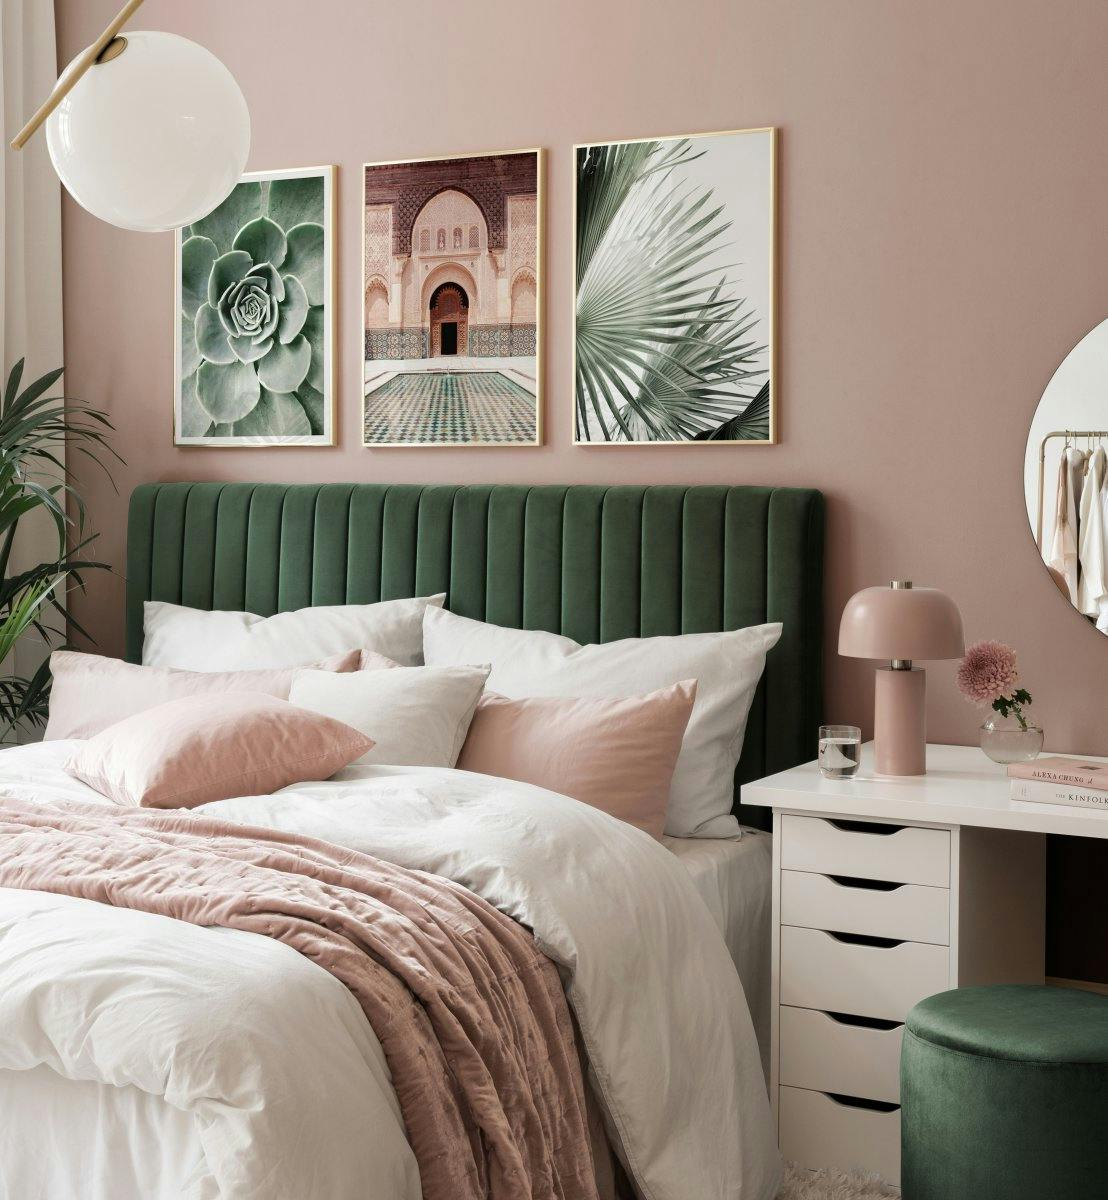 Fotoposters av arkitektur och växter i grönt och beige för sovrummet